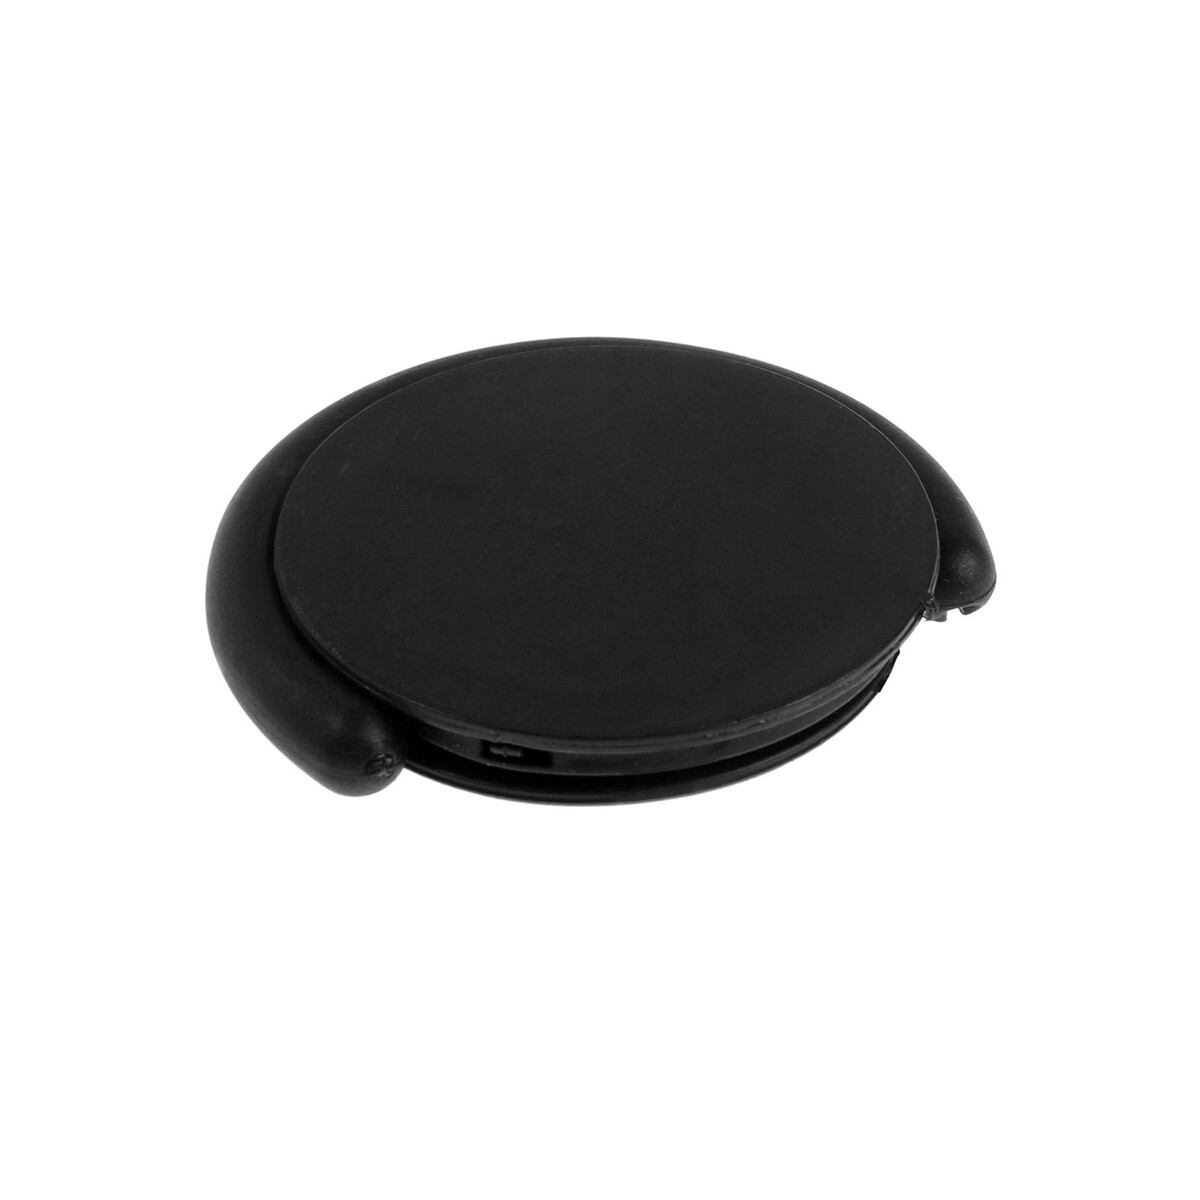 Держатель-подставка попсокет для телефона luazon, с креплением, черный держатель подставка с кольцом для телефона luazon в форме круга